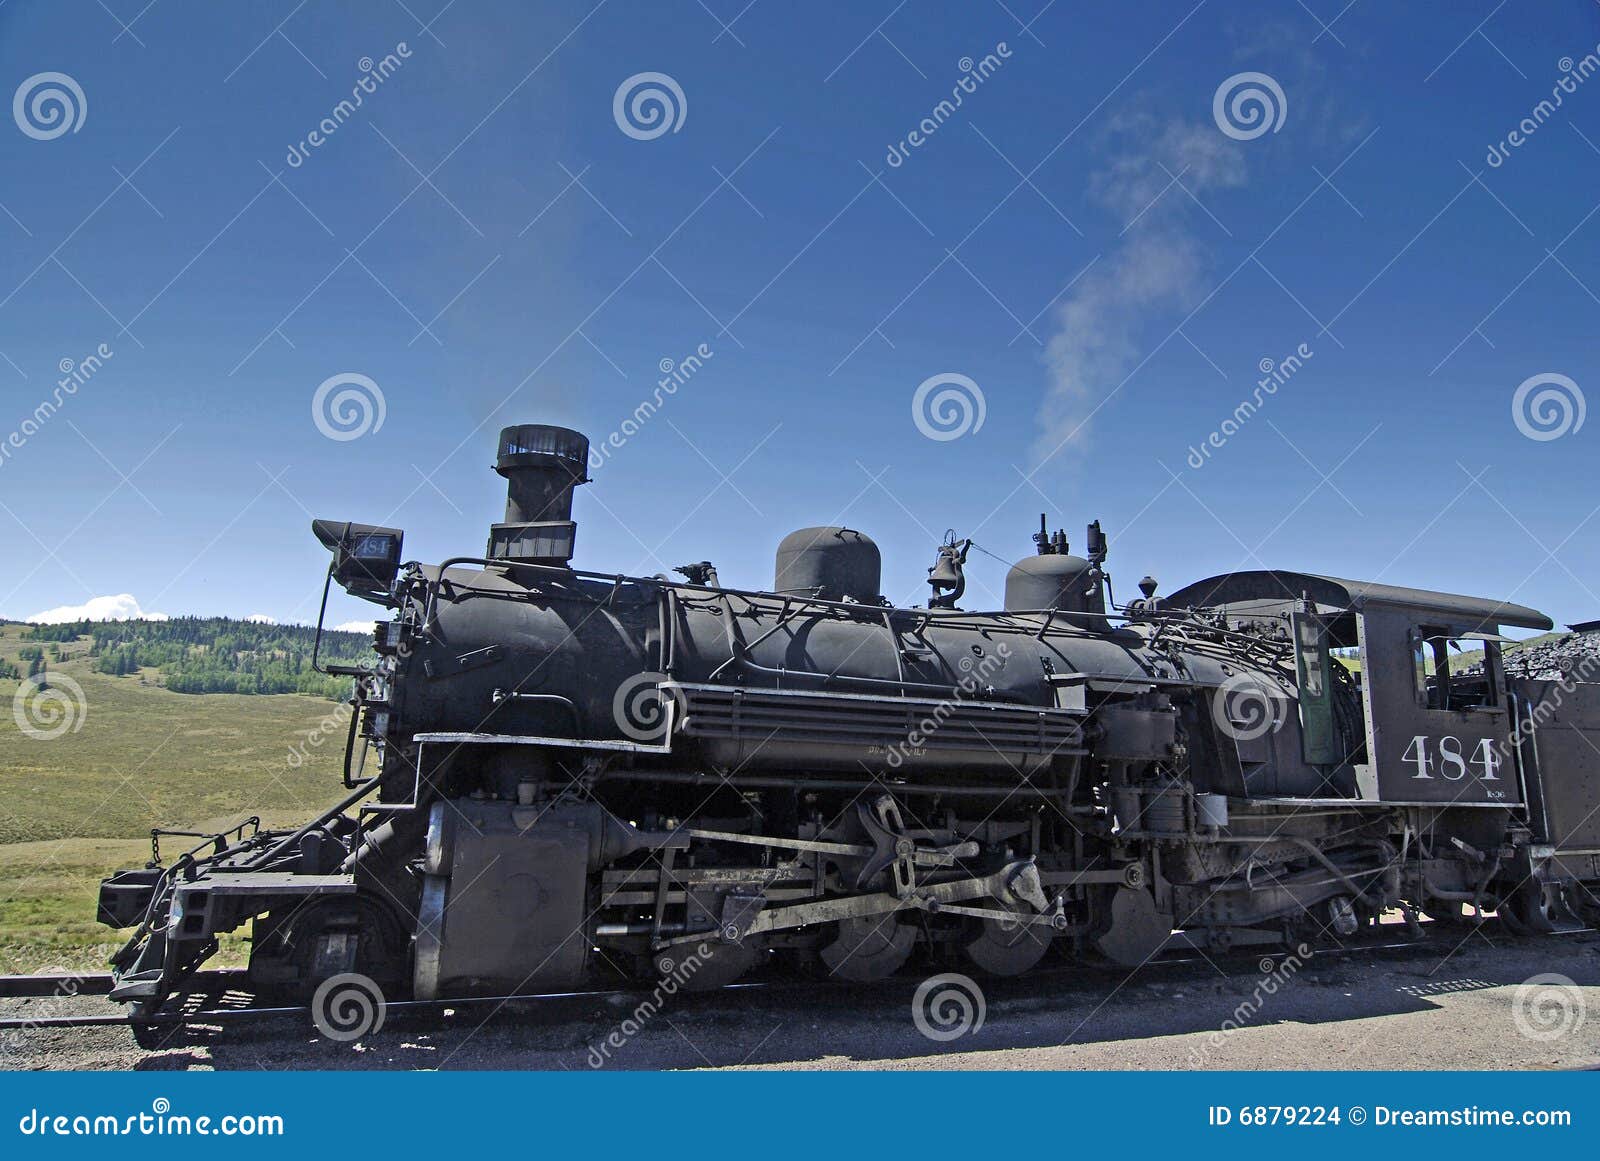 Antique Steam Engine Closeup Stock Photo - Image of americana, cumbres ...